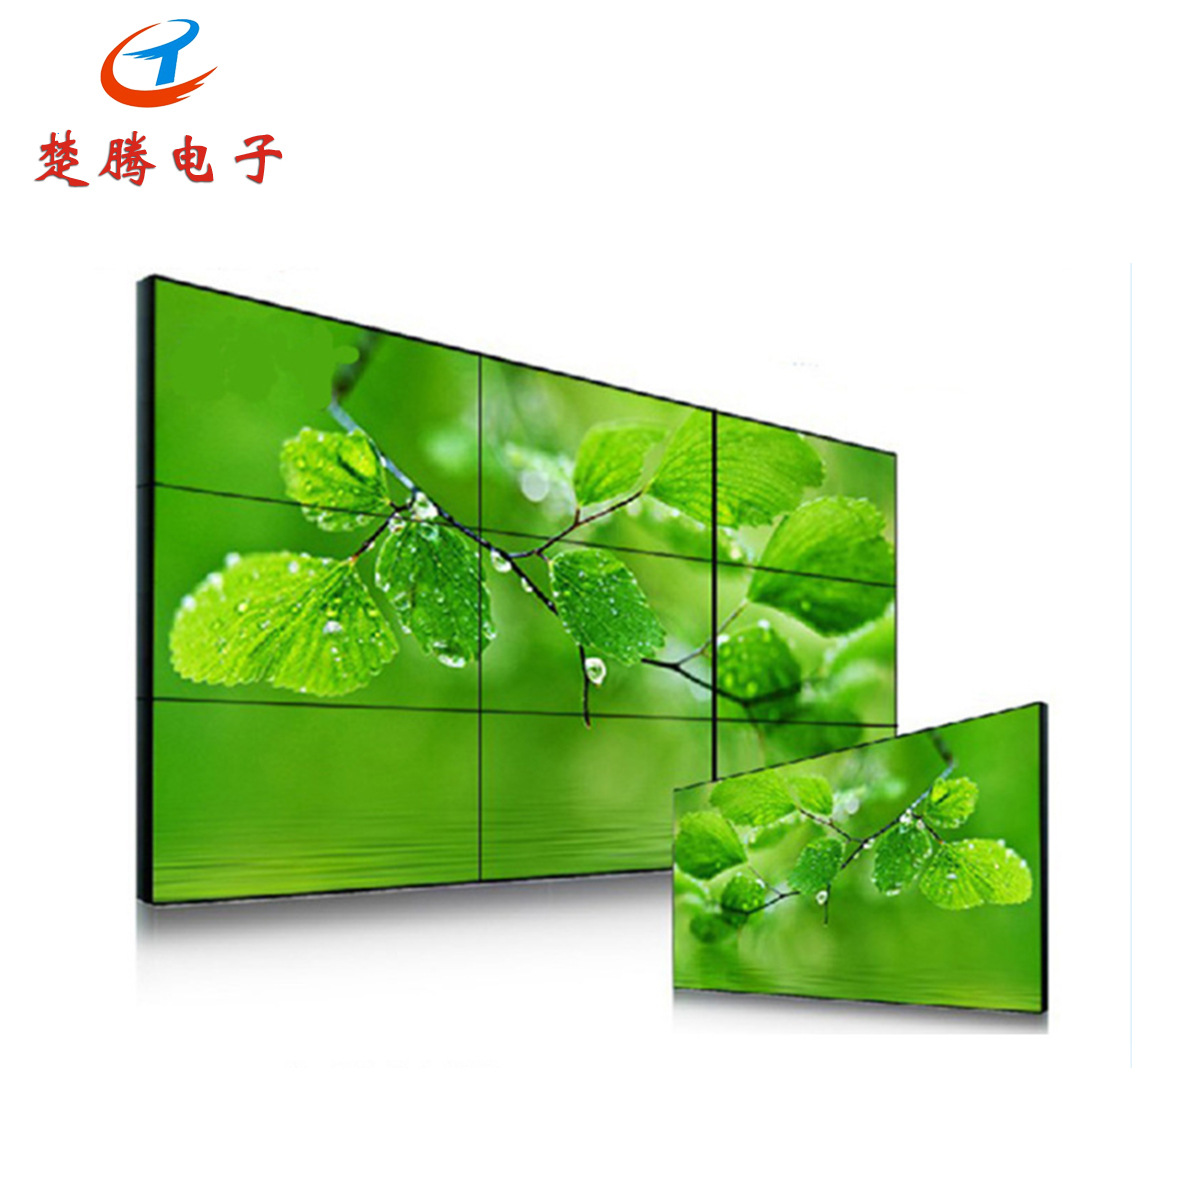 工业级65寸高清液晶屏户外广告拼接墙窄边LCD显示器拼接屏